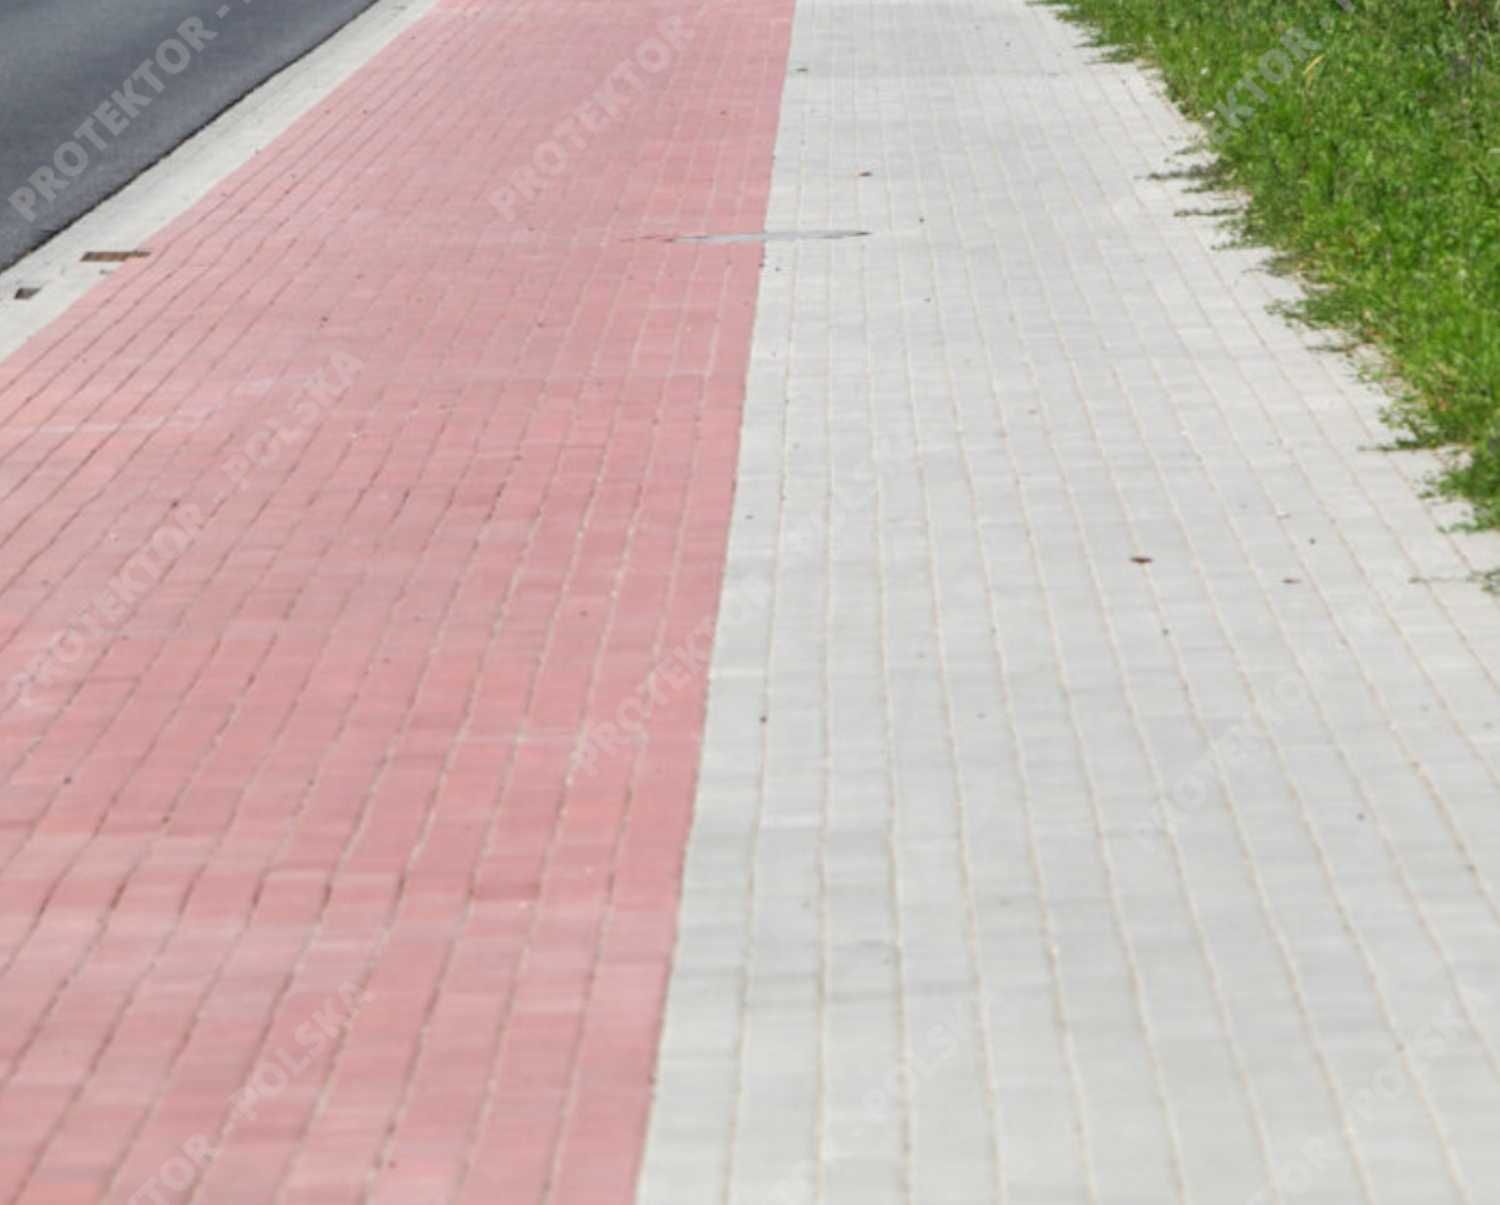 kostka brukowa HOLLAND Bruk betonowa chodnikowa podjazd deptak domino